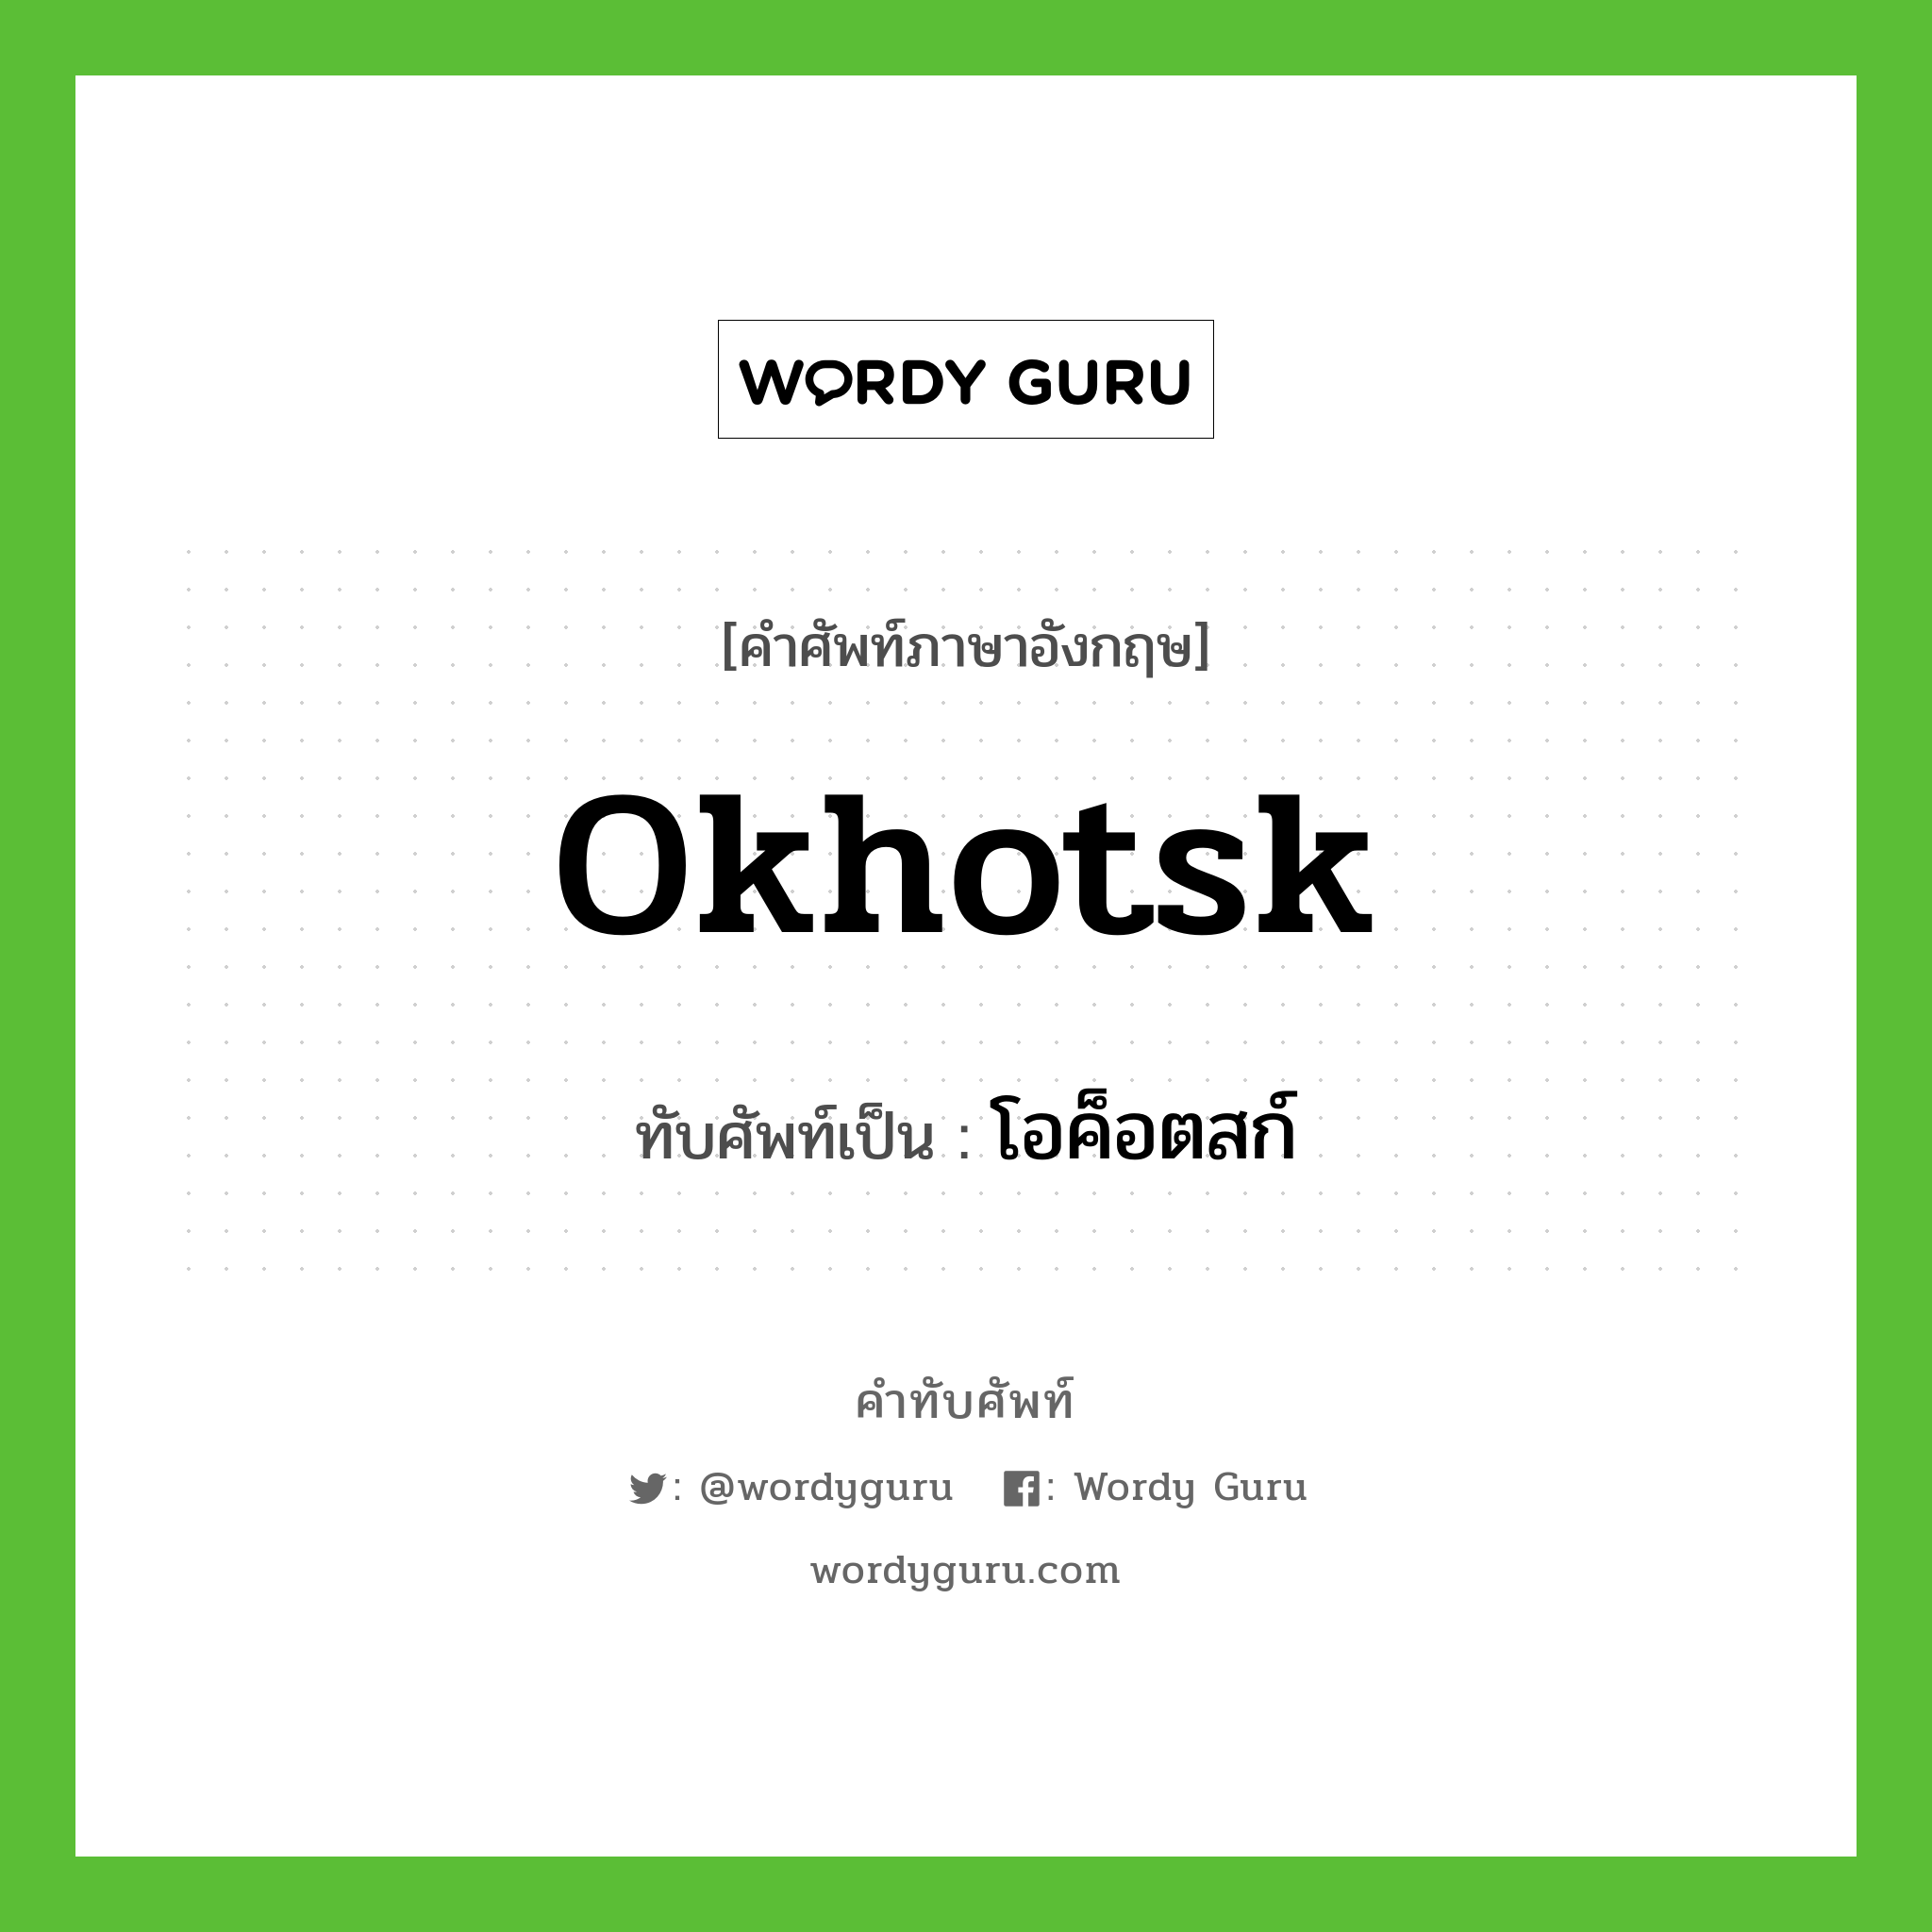 โอค็อตสก์ เขียนอย่างไร?, คำศัพท์ภาษาอังกฤษ โอค็อตสก์ ทับศัพท์เป็น Okhotsk